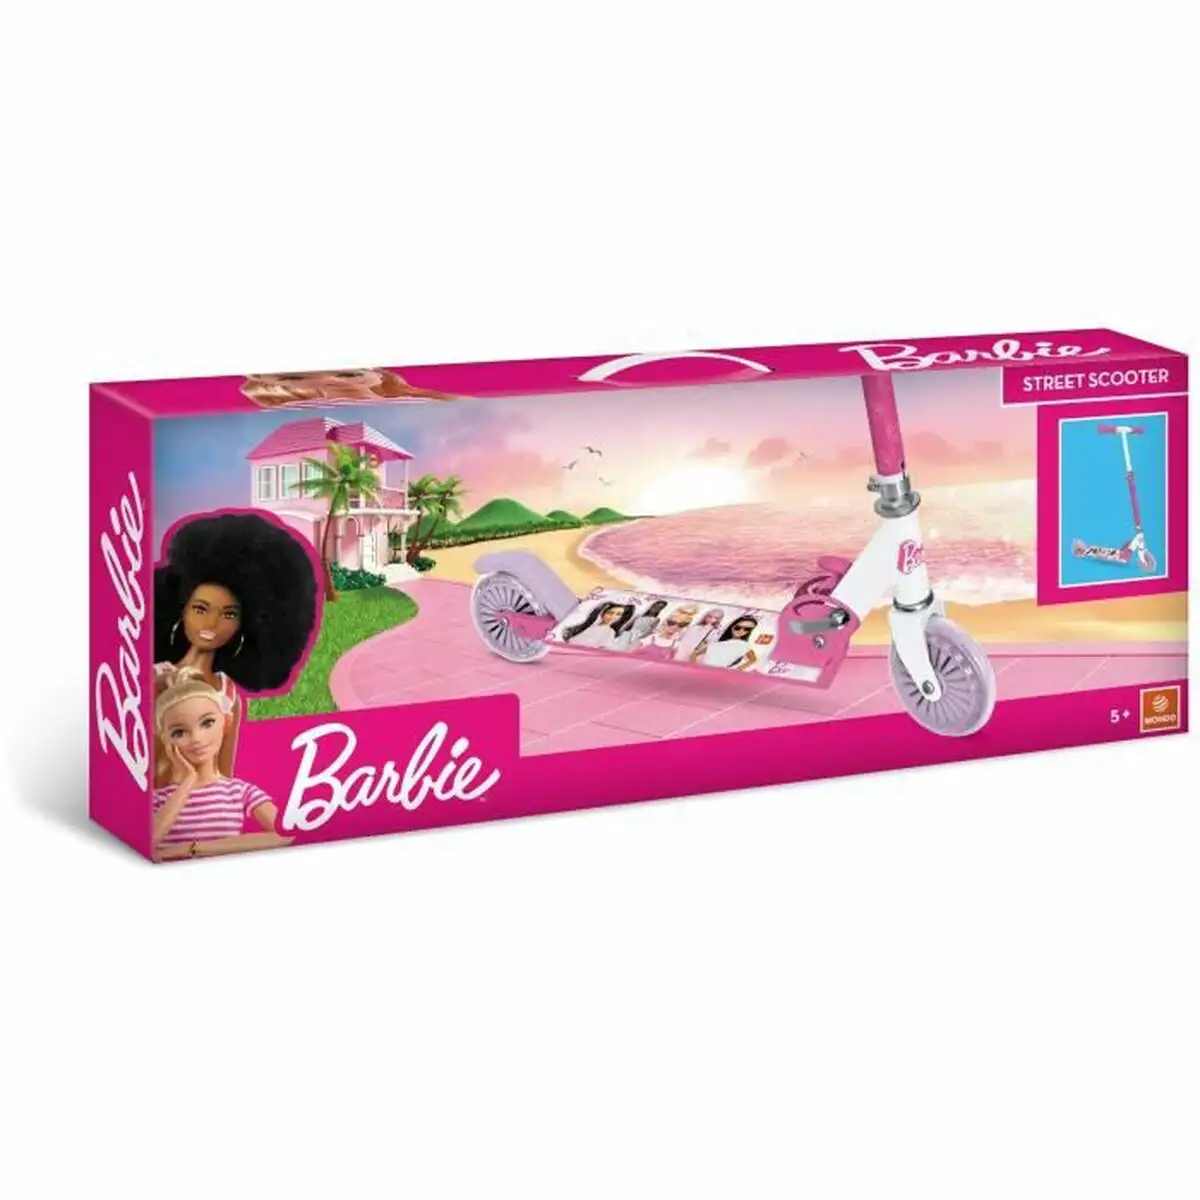 Trottinette Barbie Enfant Rose - DIAYTAR SÉNÉGAL